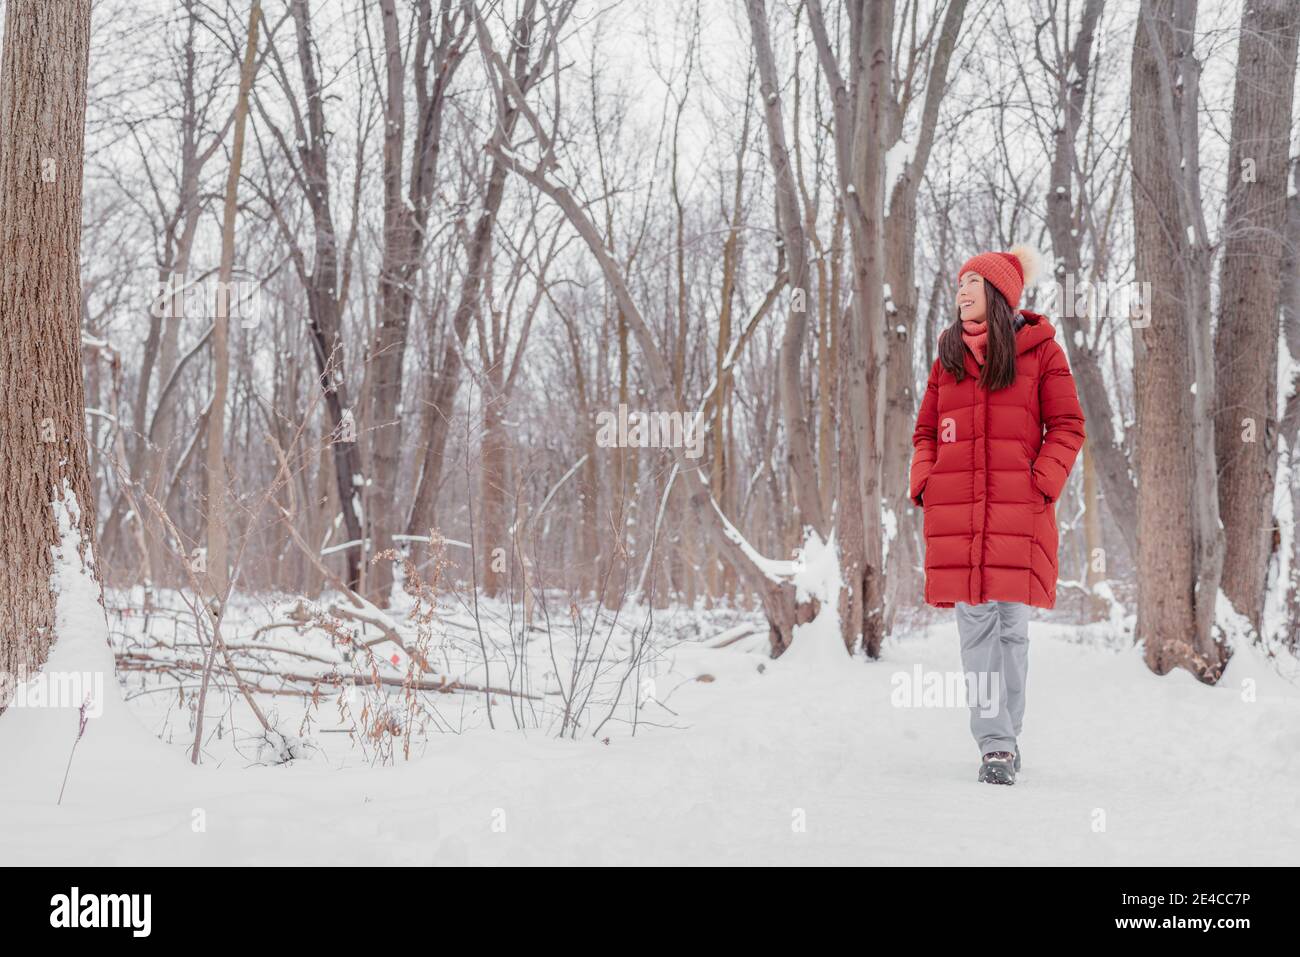 Glücklich asiatische Mädchen zu Fuß in Schnee Pfad. Frau im roten Mantel macht Outdoor-Winteraktivitäten genießen kalte Jahreszeit Stockfoto